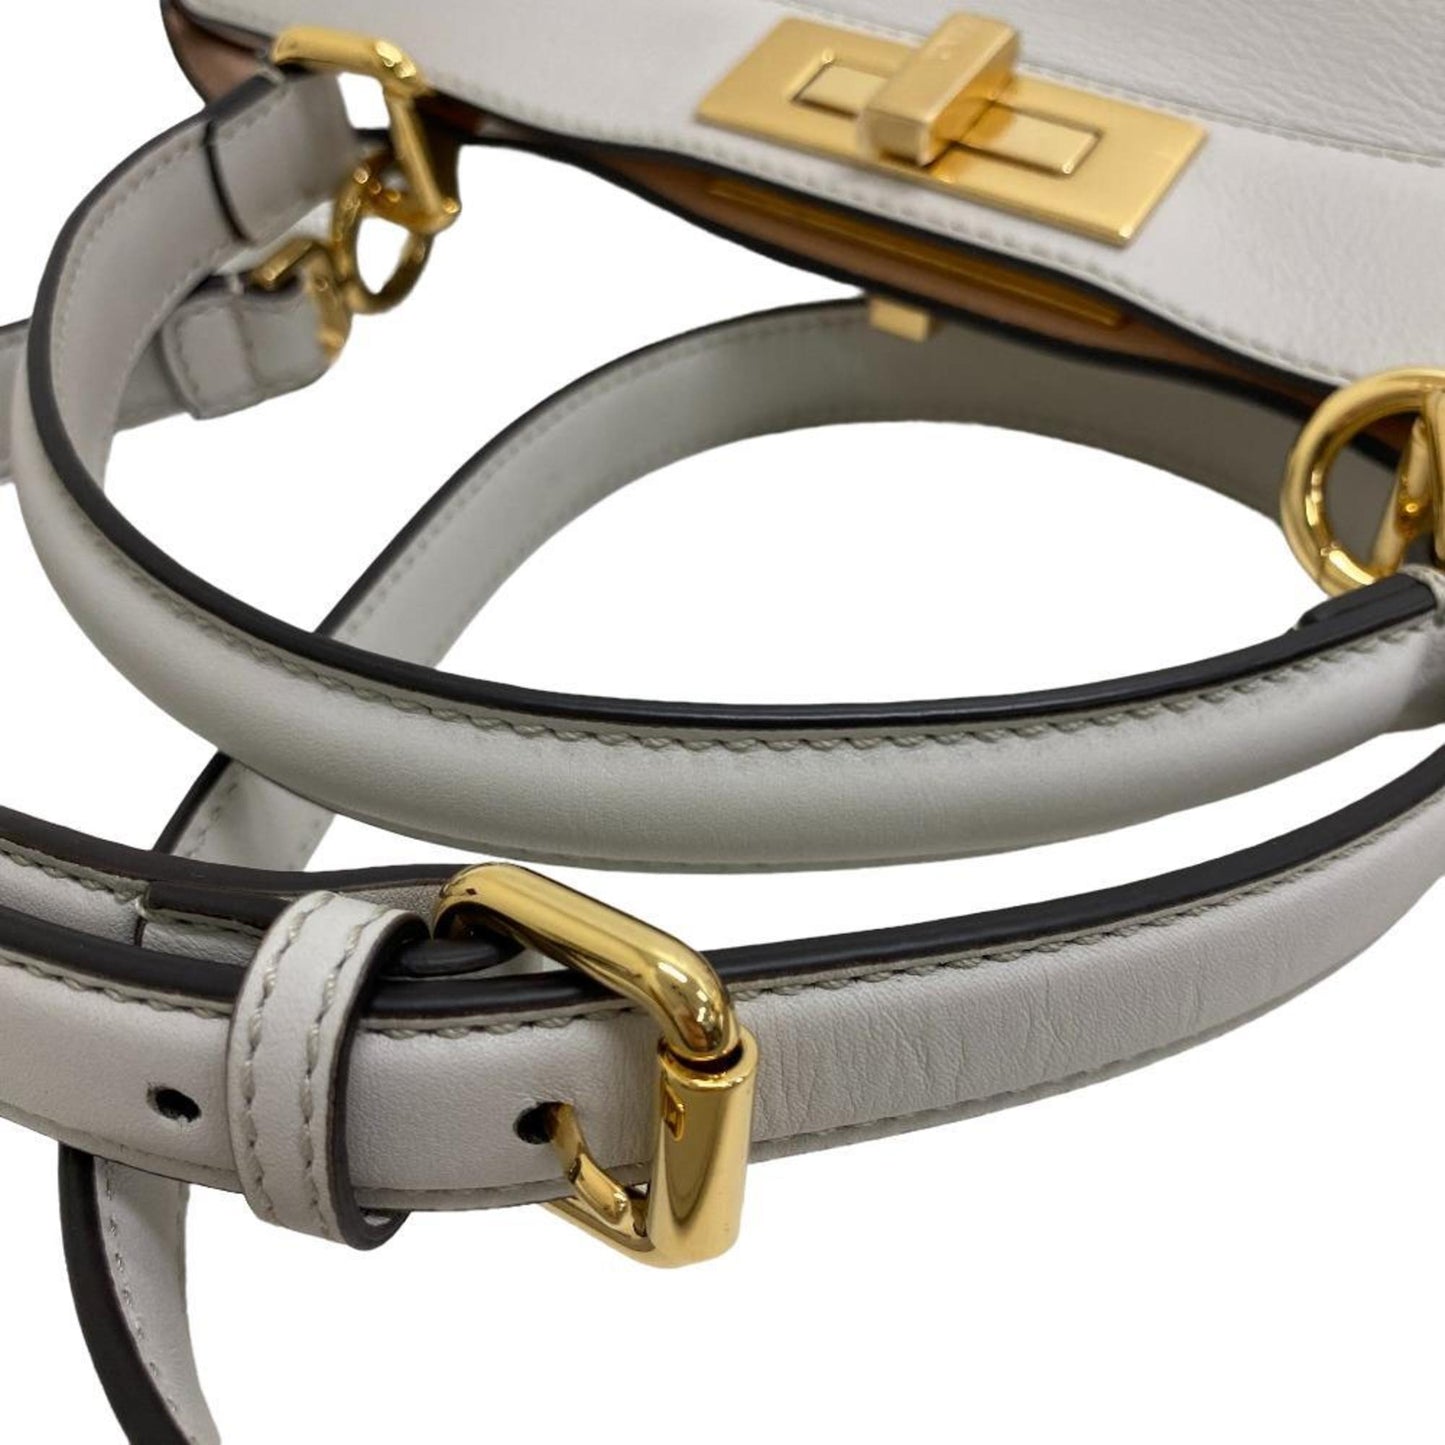 Fendi Women's Elegant Leather Handbag with Shoulder Strap by Famous Designer in Grey